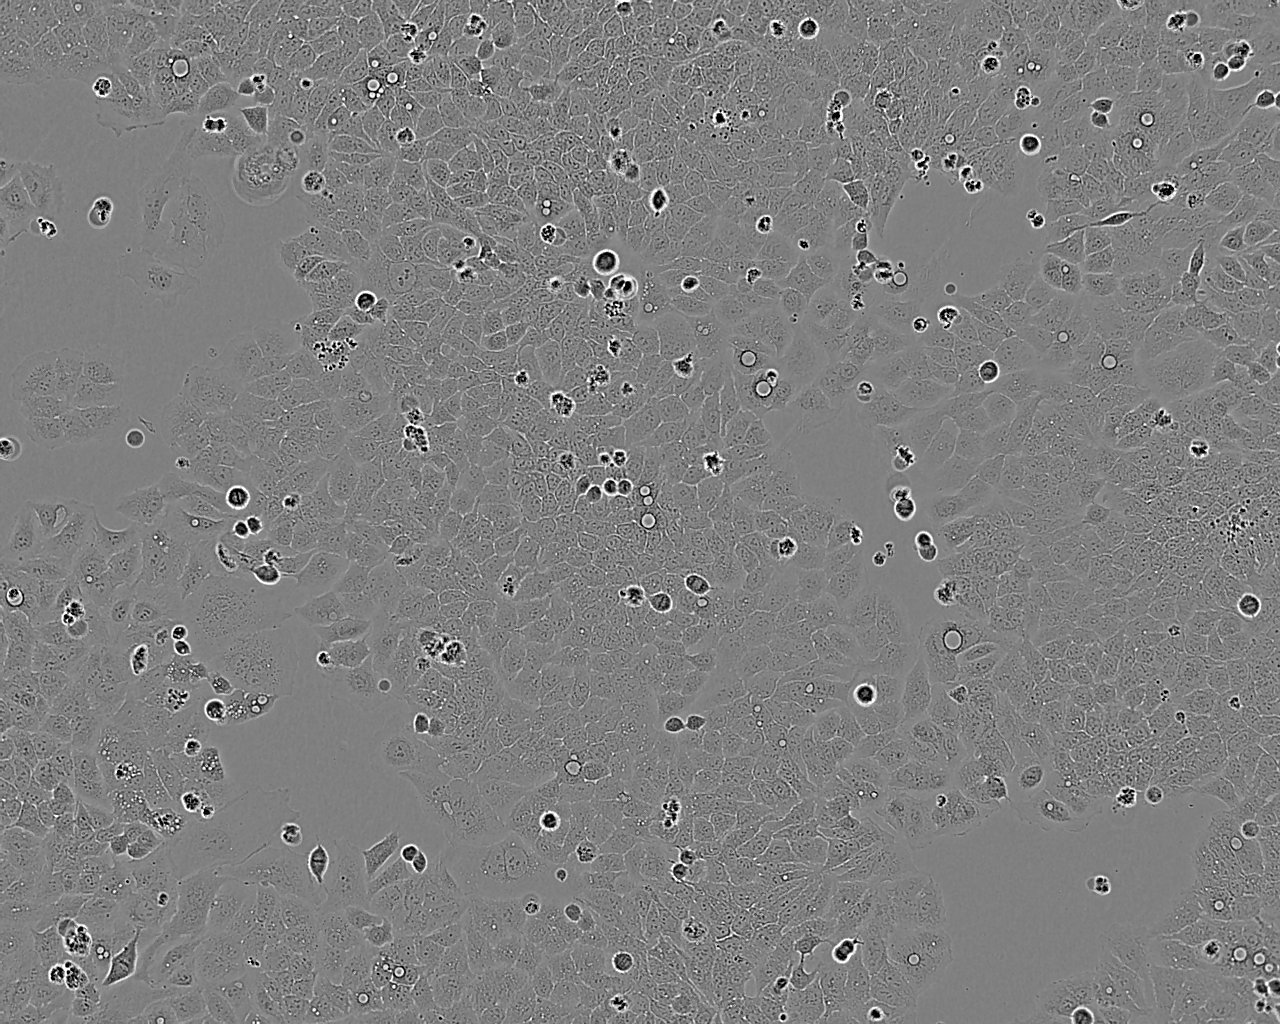 MLTC-1 Cell:小鼠睾丸间质细胞瘤细胞系